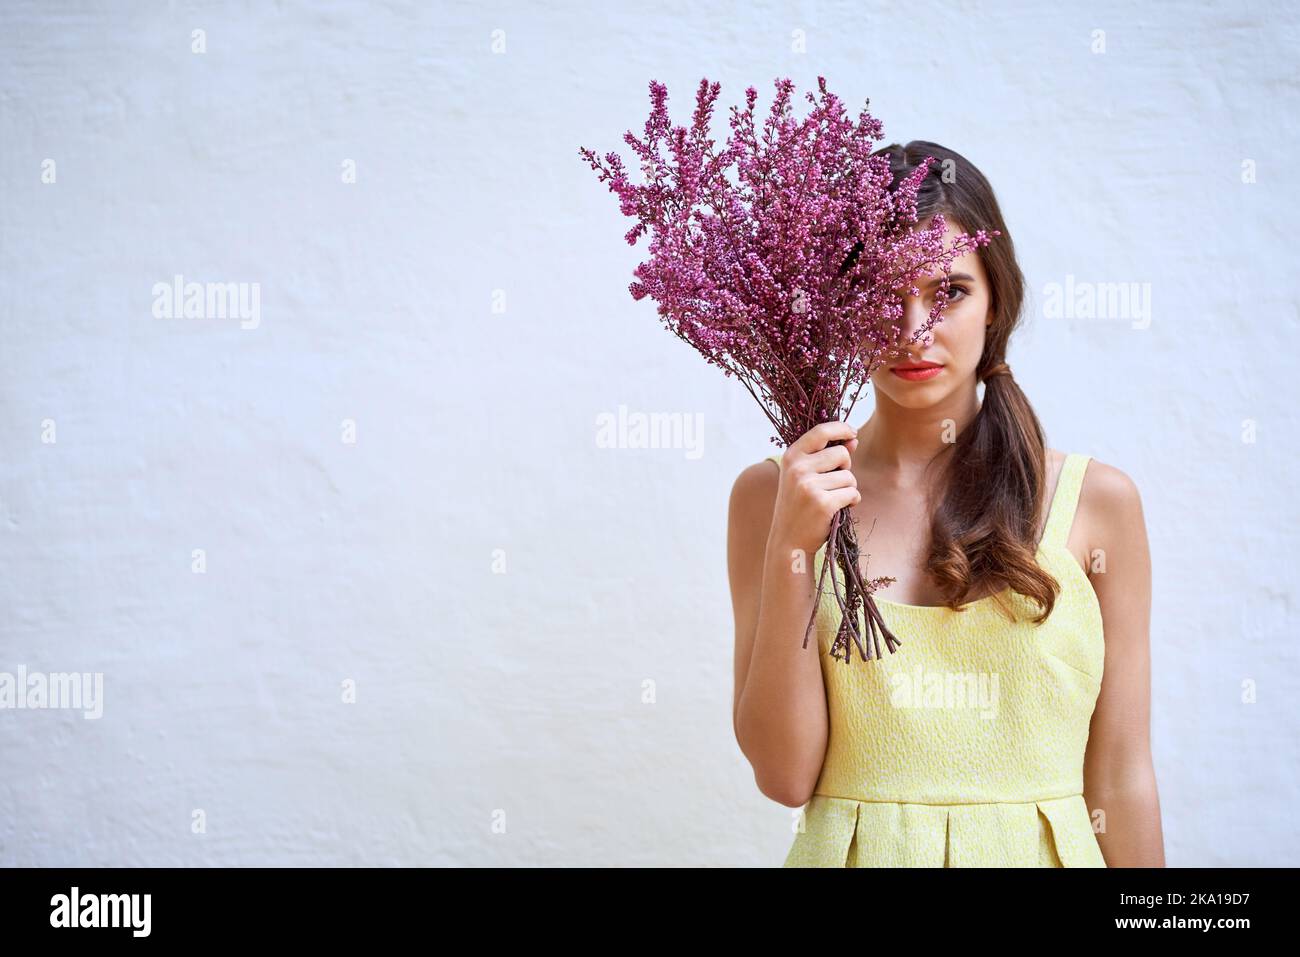 La bellezza la trova sempre. Studio ritratto di una giovane donna sicura che si nasconde dietro un bouquet di fiori in piedi su uno sfondo grigio. Foto Stock